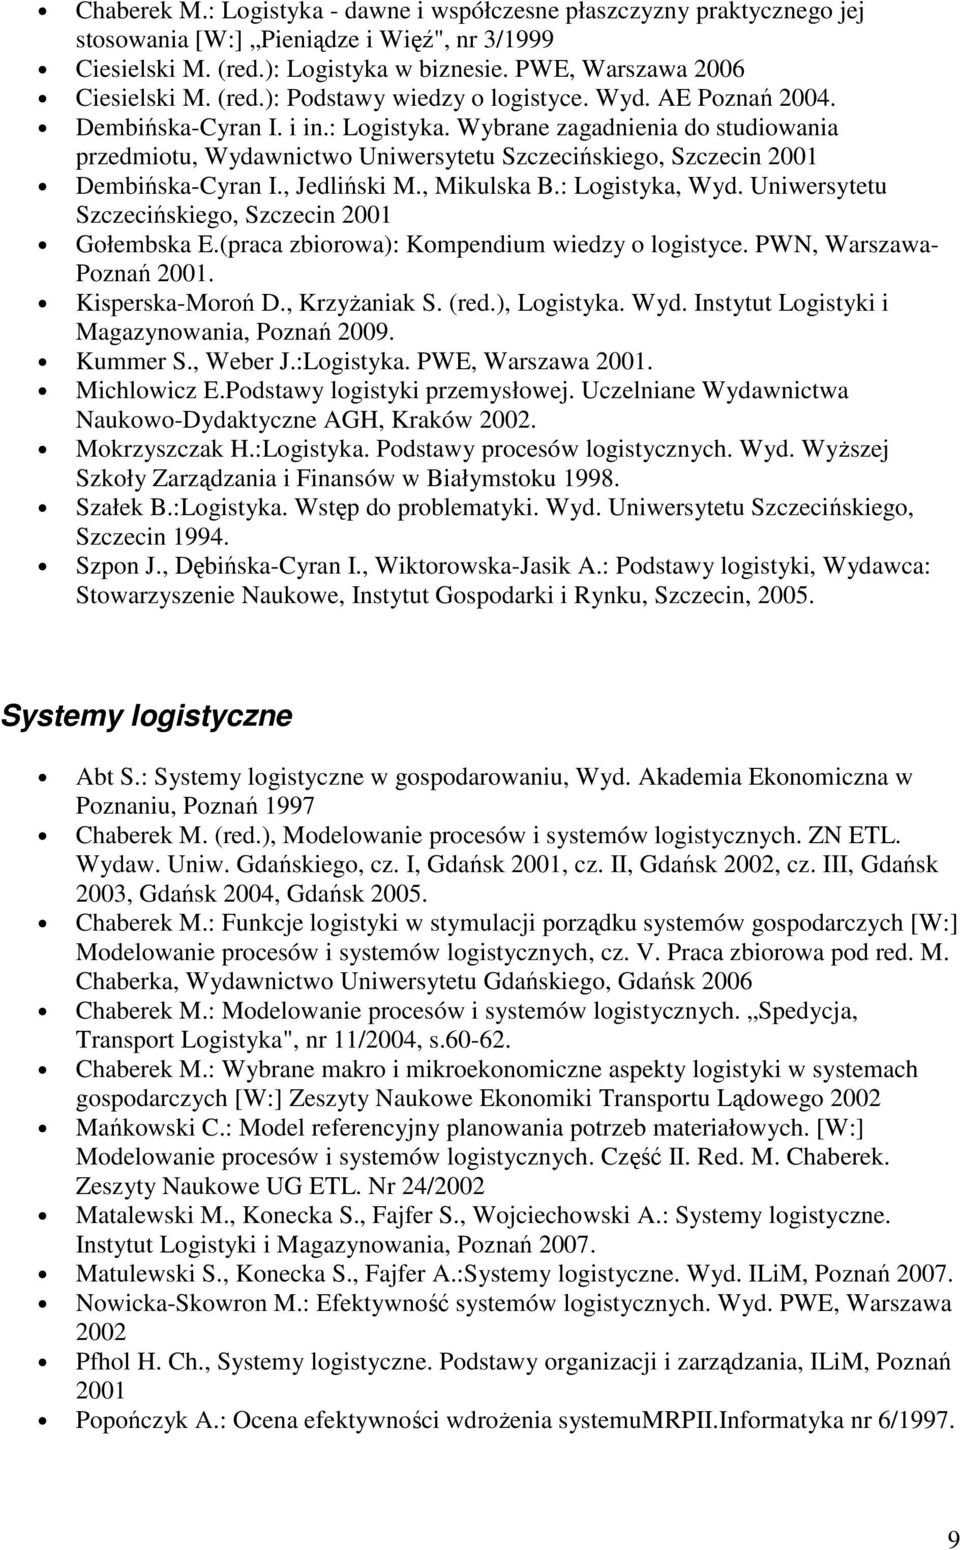 Wybrane zagadnienia do studiowania przedmiotu, Wydawnictwo Uniwersytetu Szczecińskiego, Szczecin 2001 Dembińska-Cyran I., Jedliński M., Mikulska B.: Logistyka, Wyd.